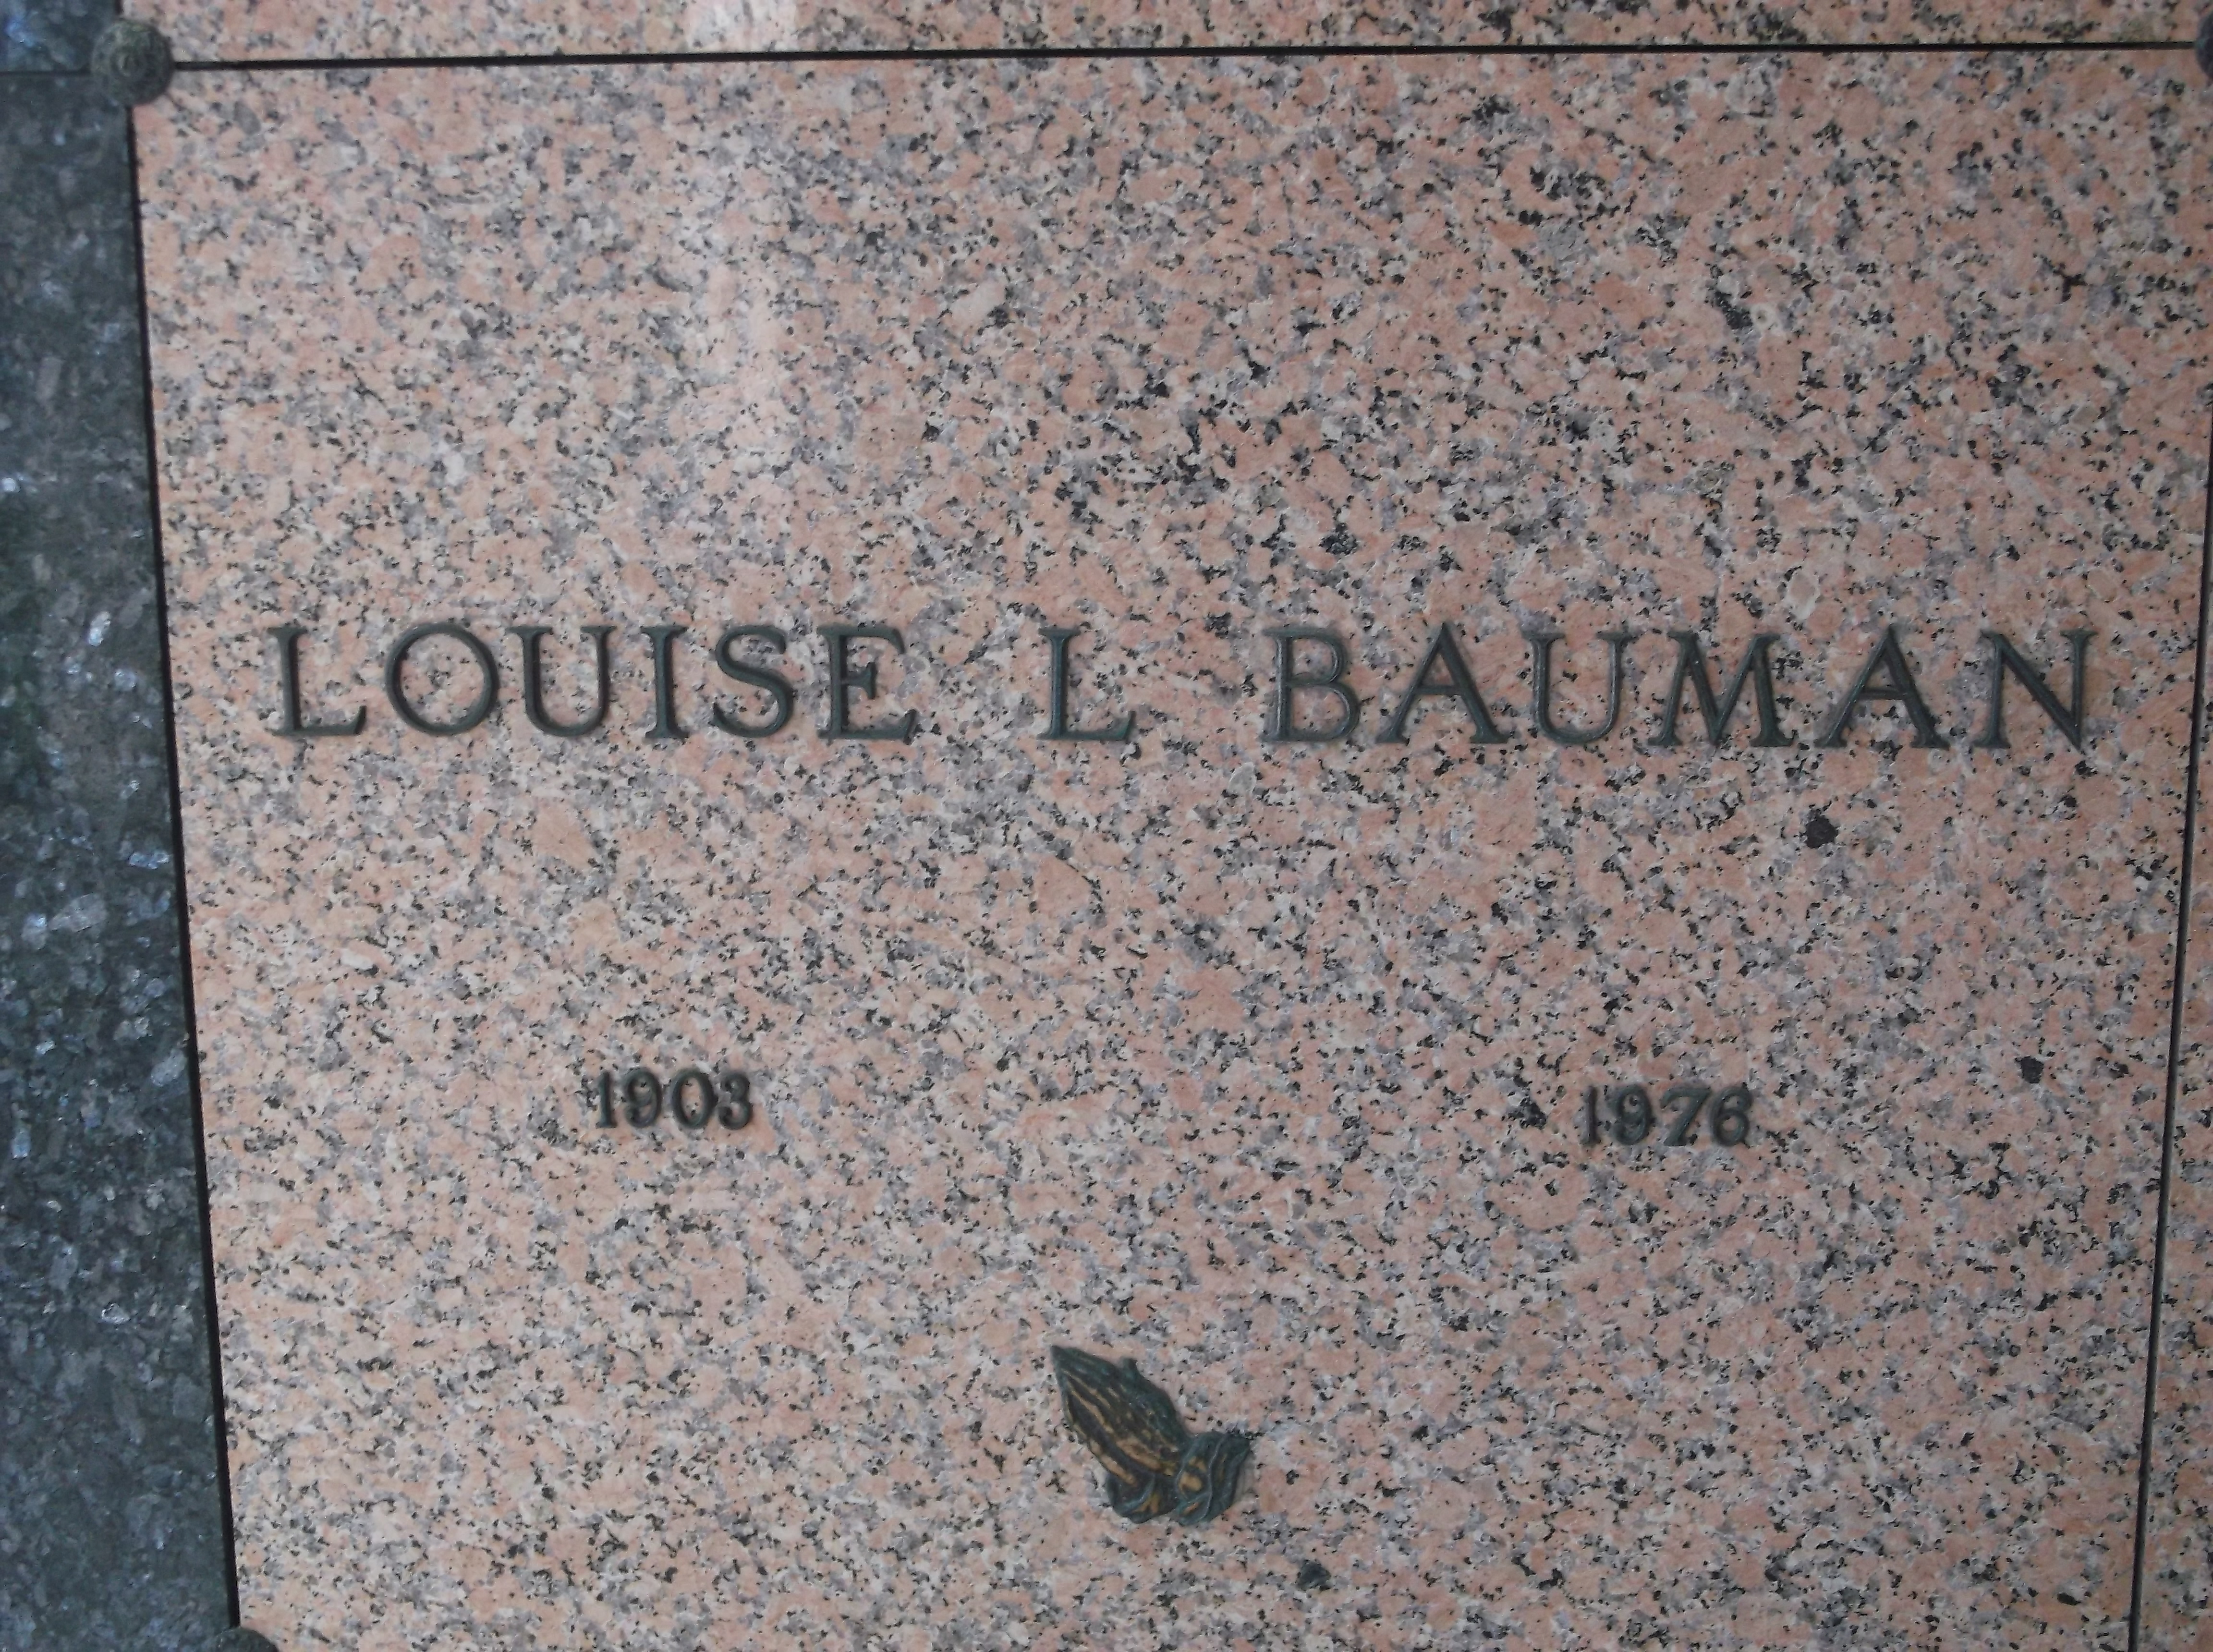 Louise L Bauman